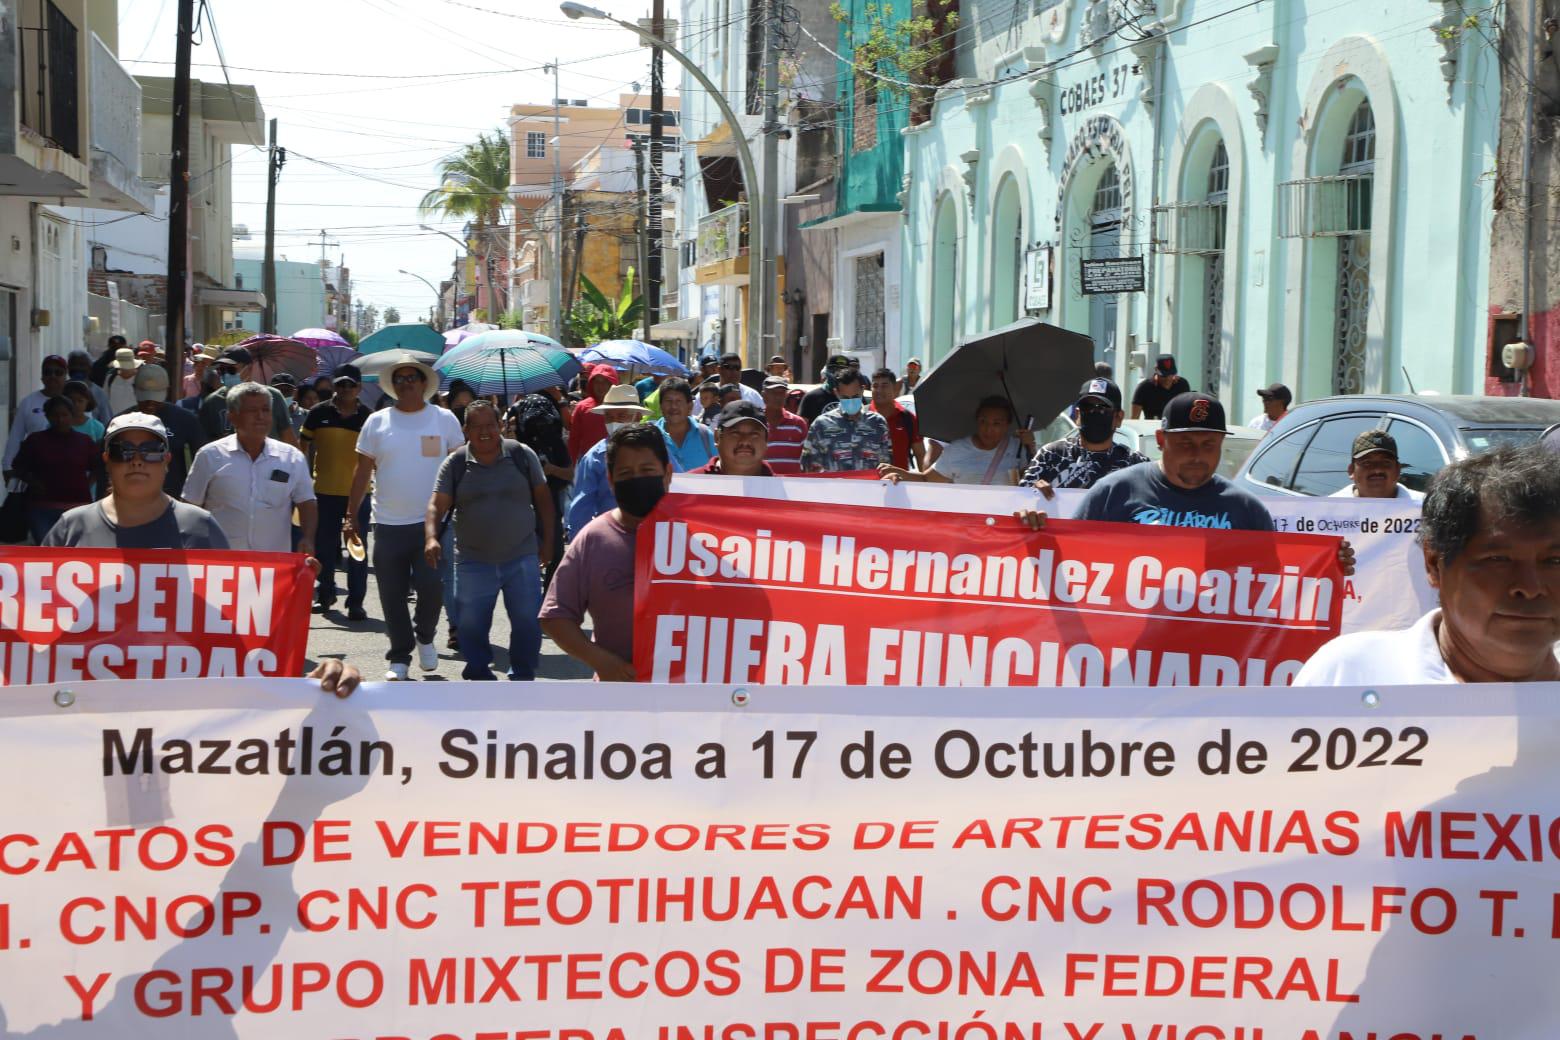 $!Vendedores de playa de Mazatlán exigen que Profepa regule permisos; denuncian hostigamiento de Oficialía Mayor